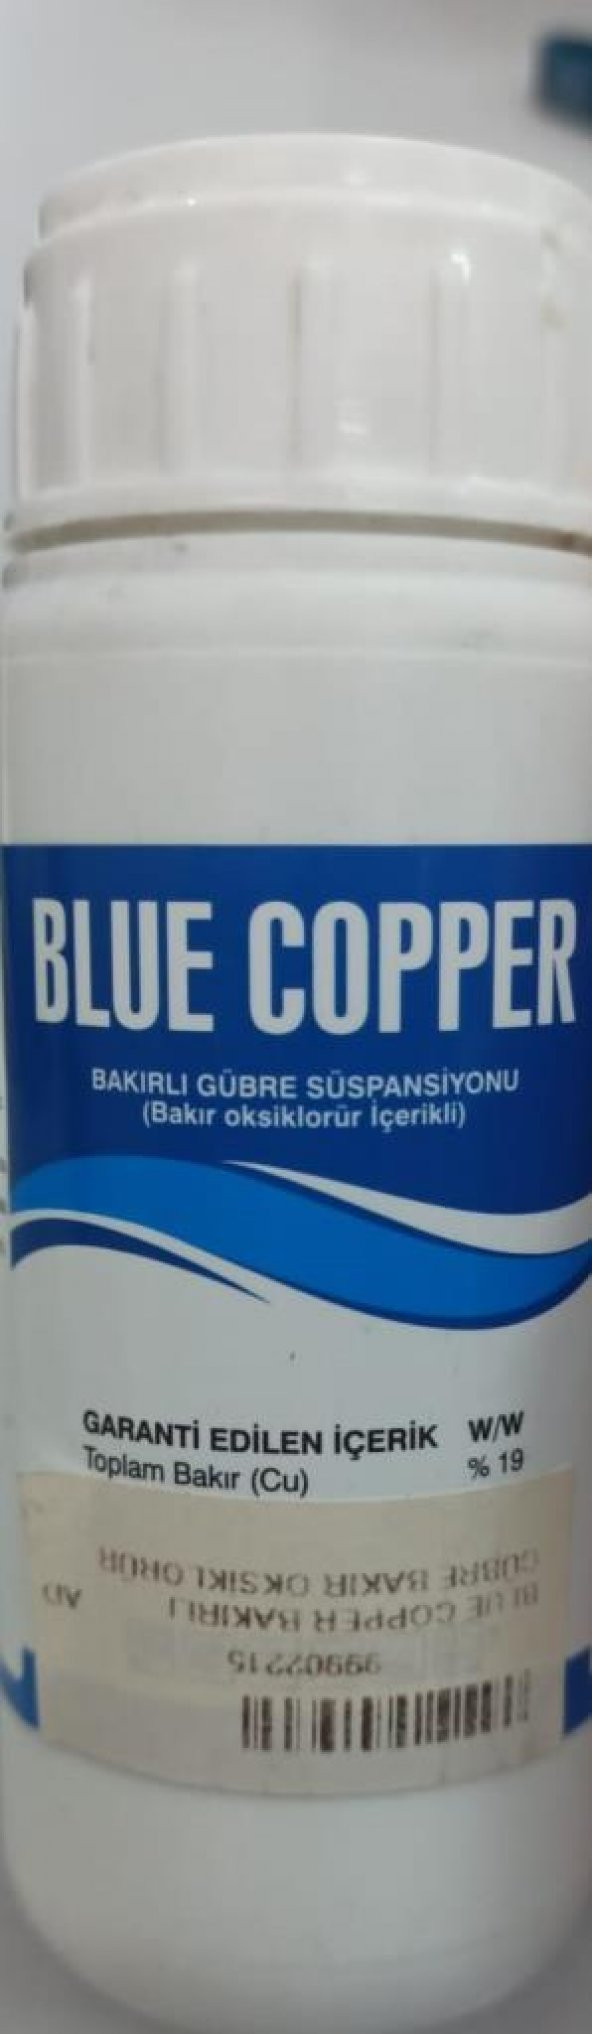 Özdemir Kimya Blue Copper Bakırlı Gübre Bakır Oksiklorür 100Cc